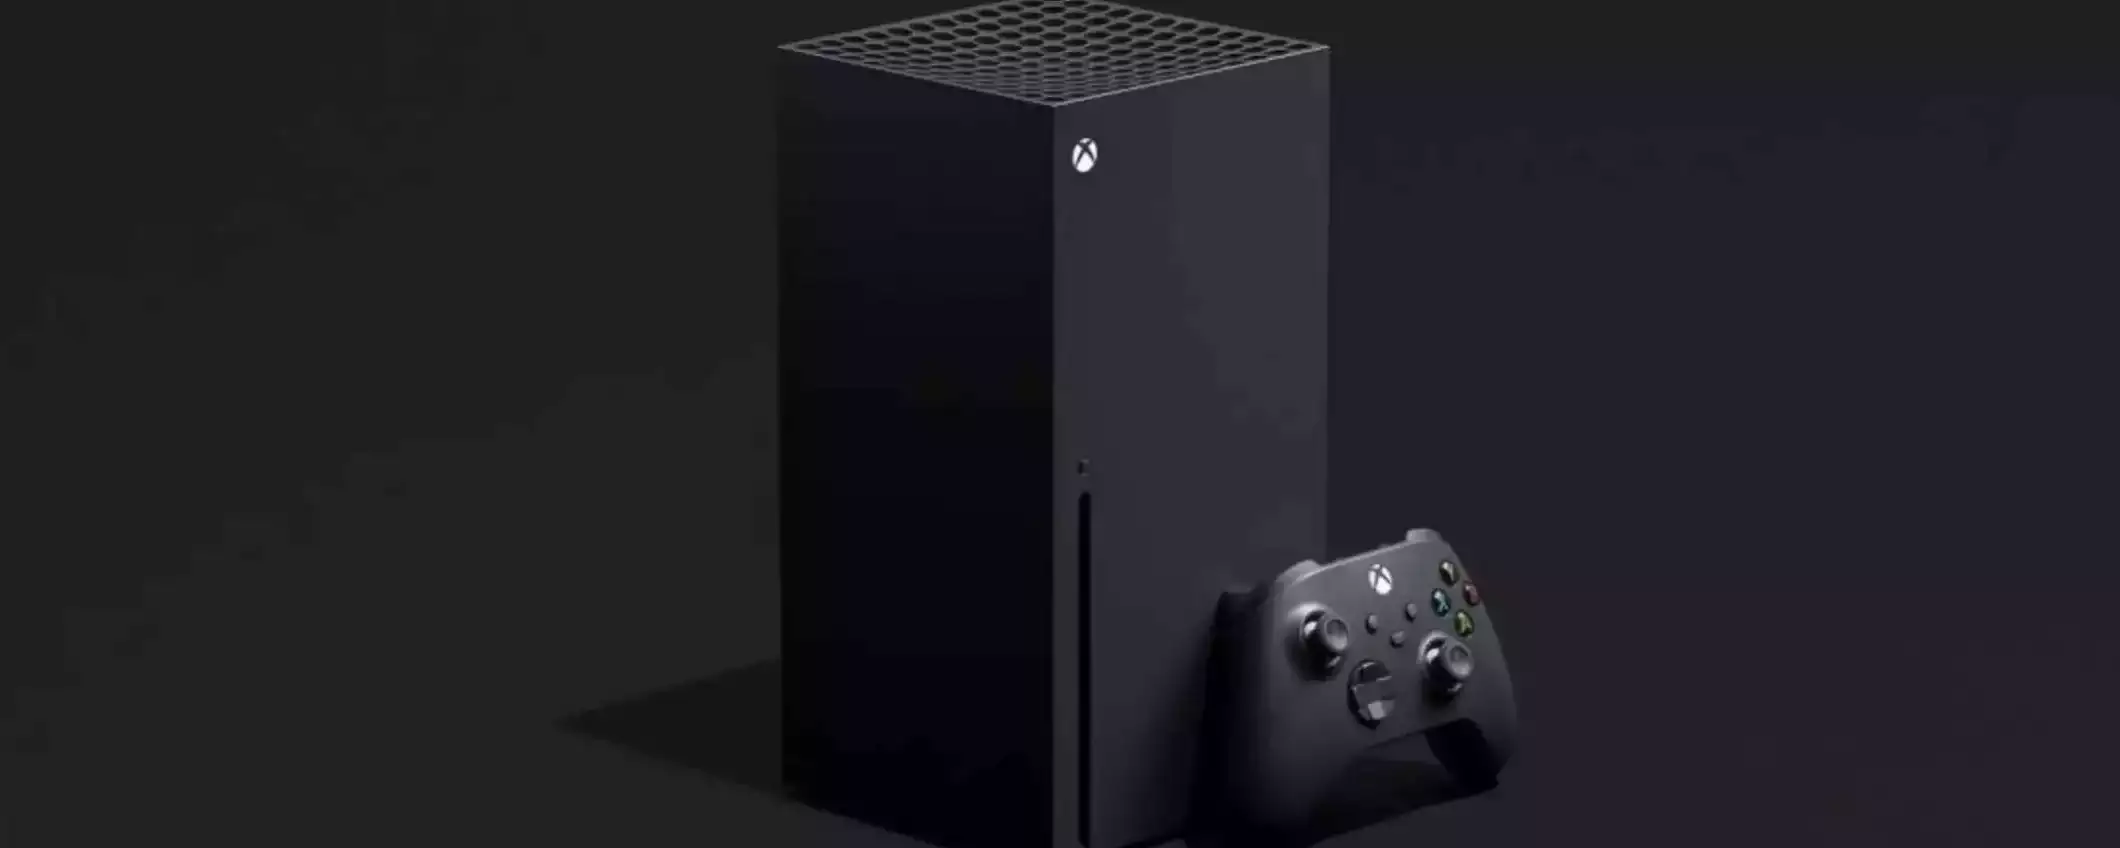 Xbox Series X: la potentissima console di Microsoft a un prezzo BASSISSIMO su eBay (CODICE SCONTO)